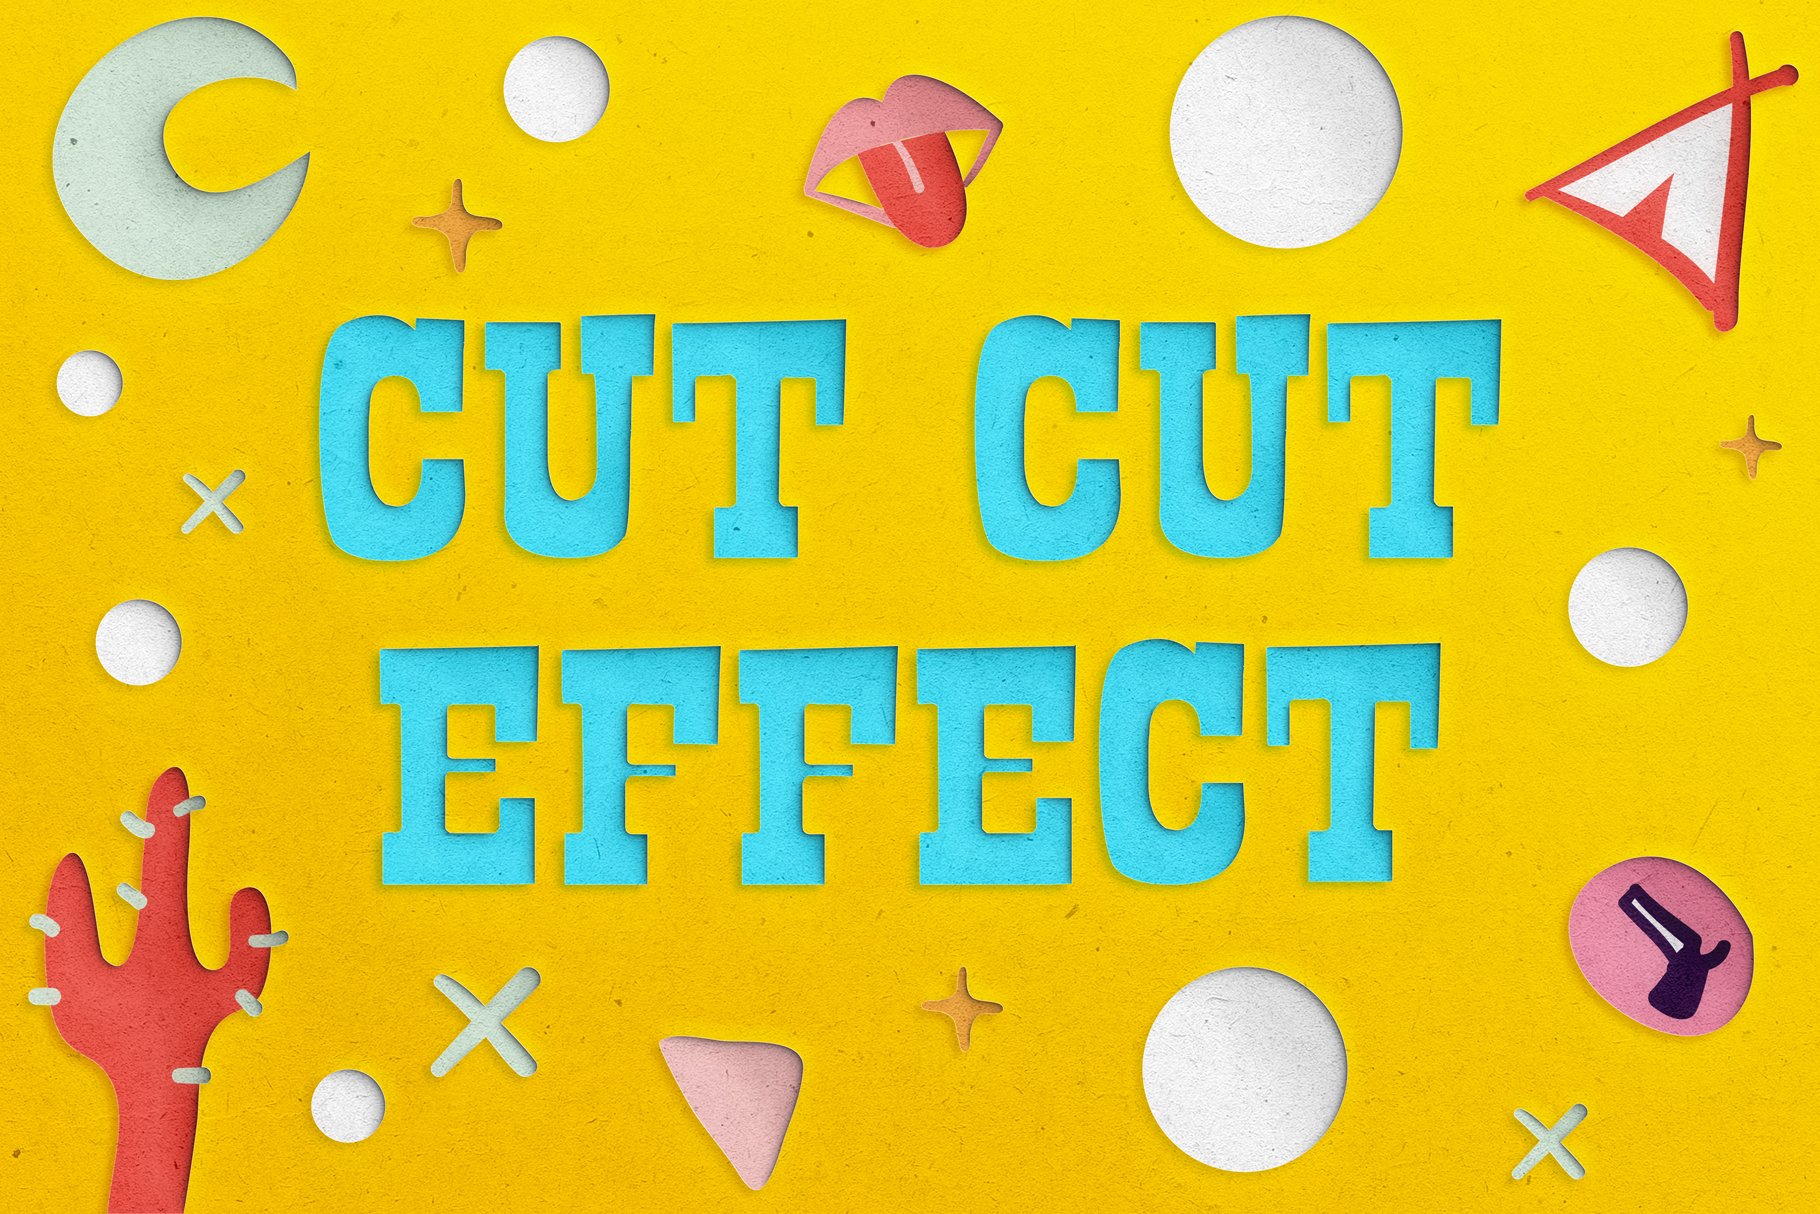 Cut Cut Effectcover image.